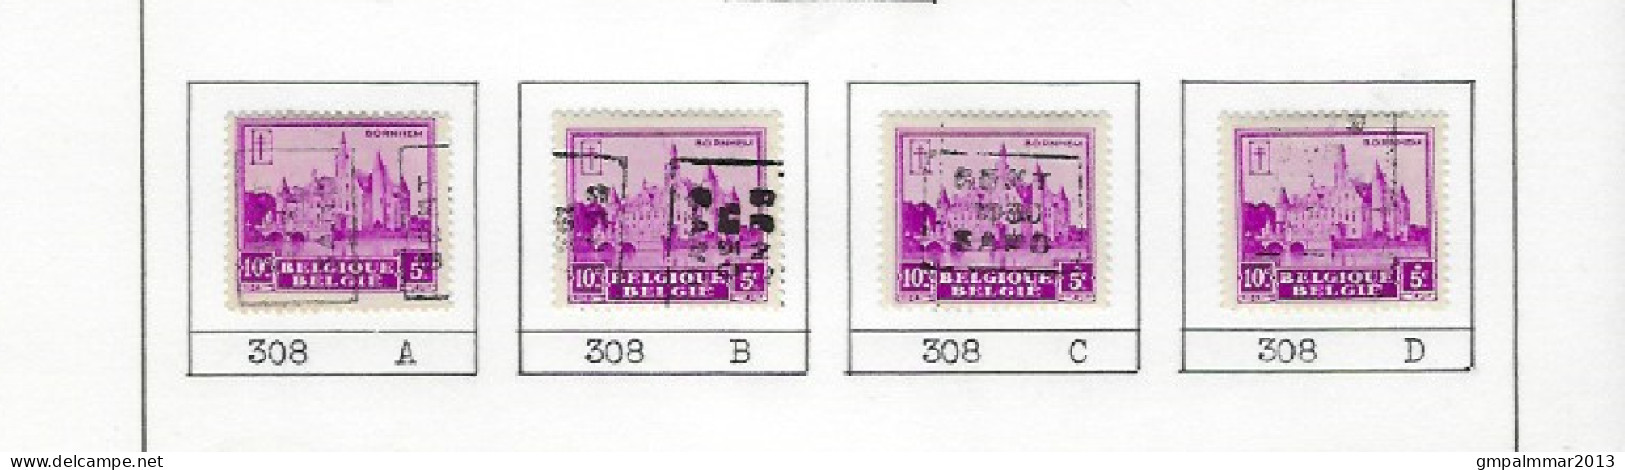 Zegel Nr. 308  voorafstempeling Nr. 5959 GENT 1930  GAND In De 4 Posities , A  B  C  en D ; Staat Zie Scan ! - Rollenmarken 1930-..